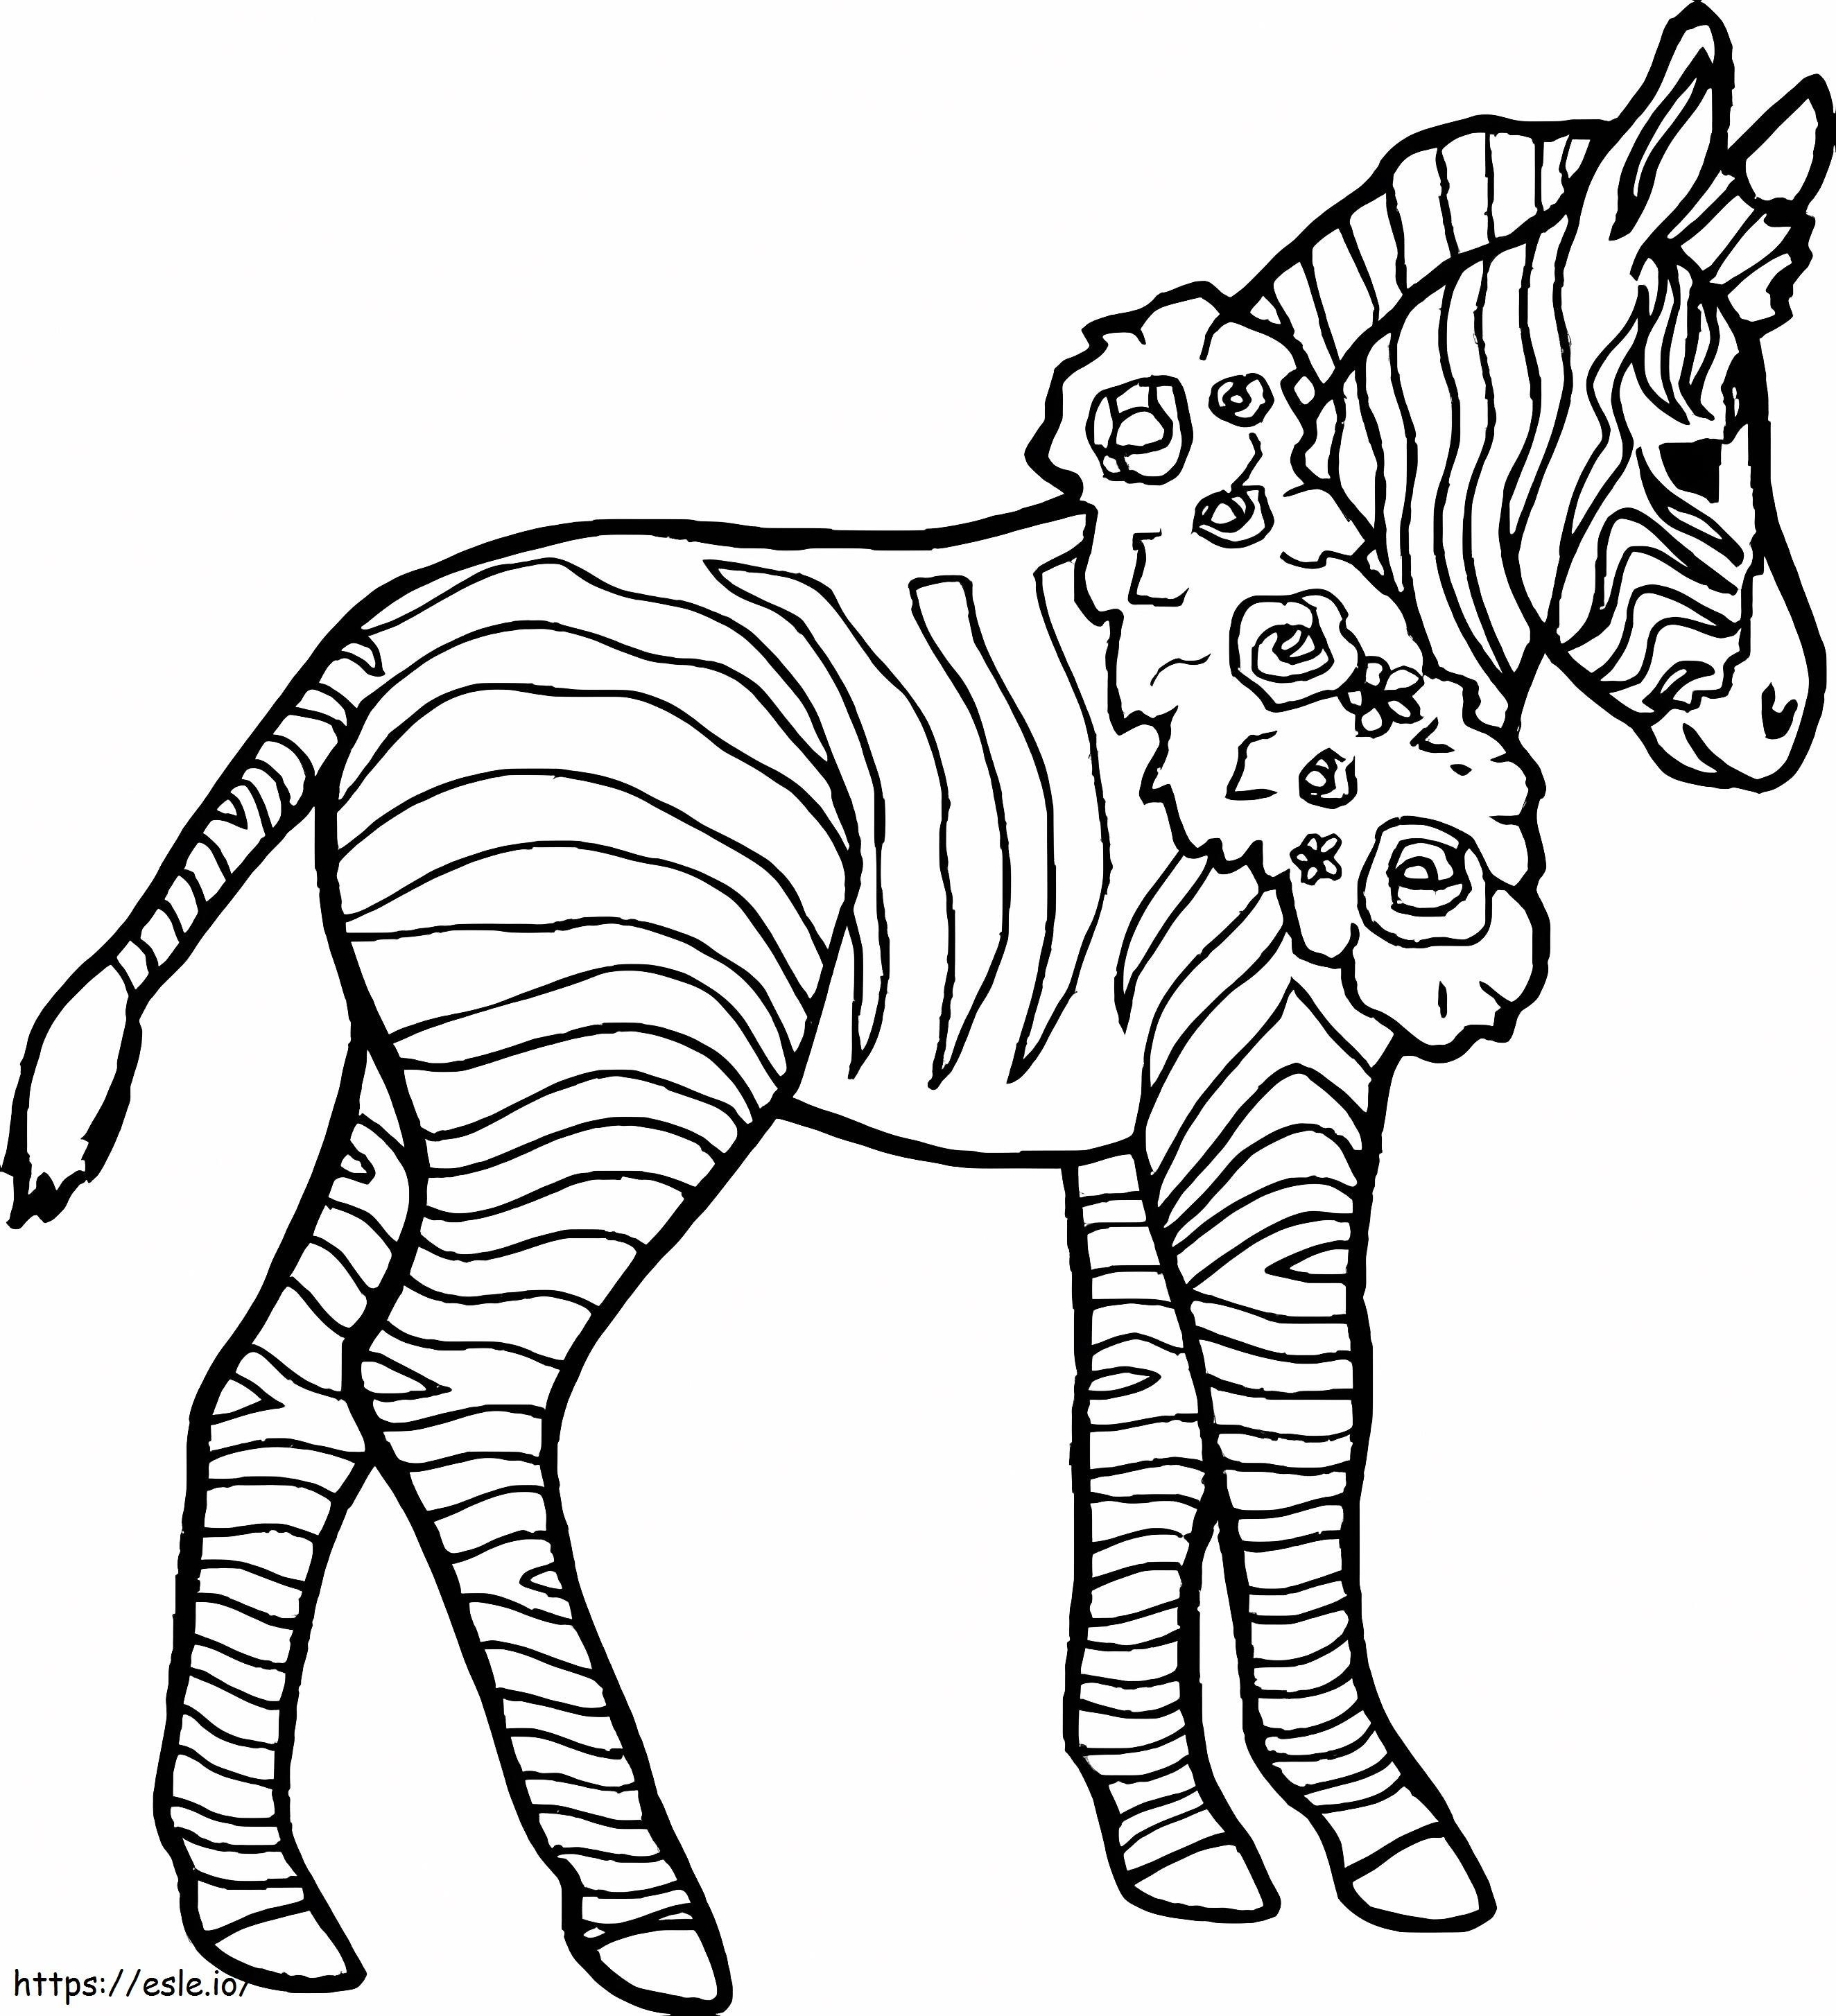 Zebra usa uma coroa em volta do pescoço para colorir